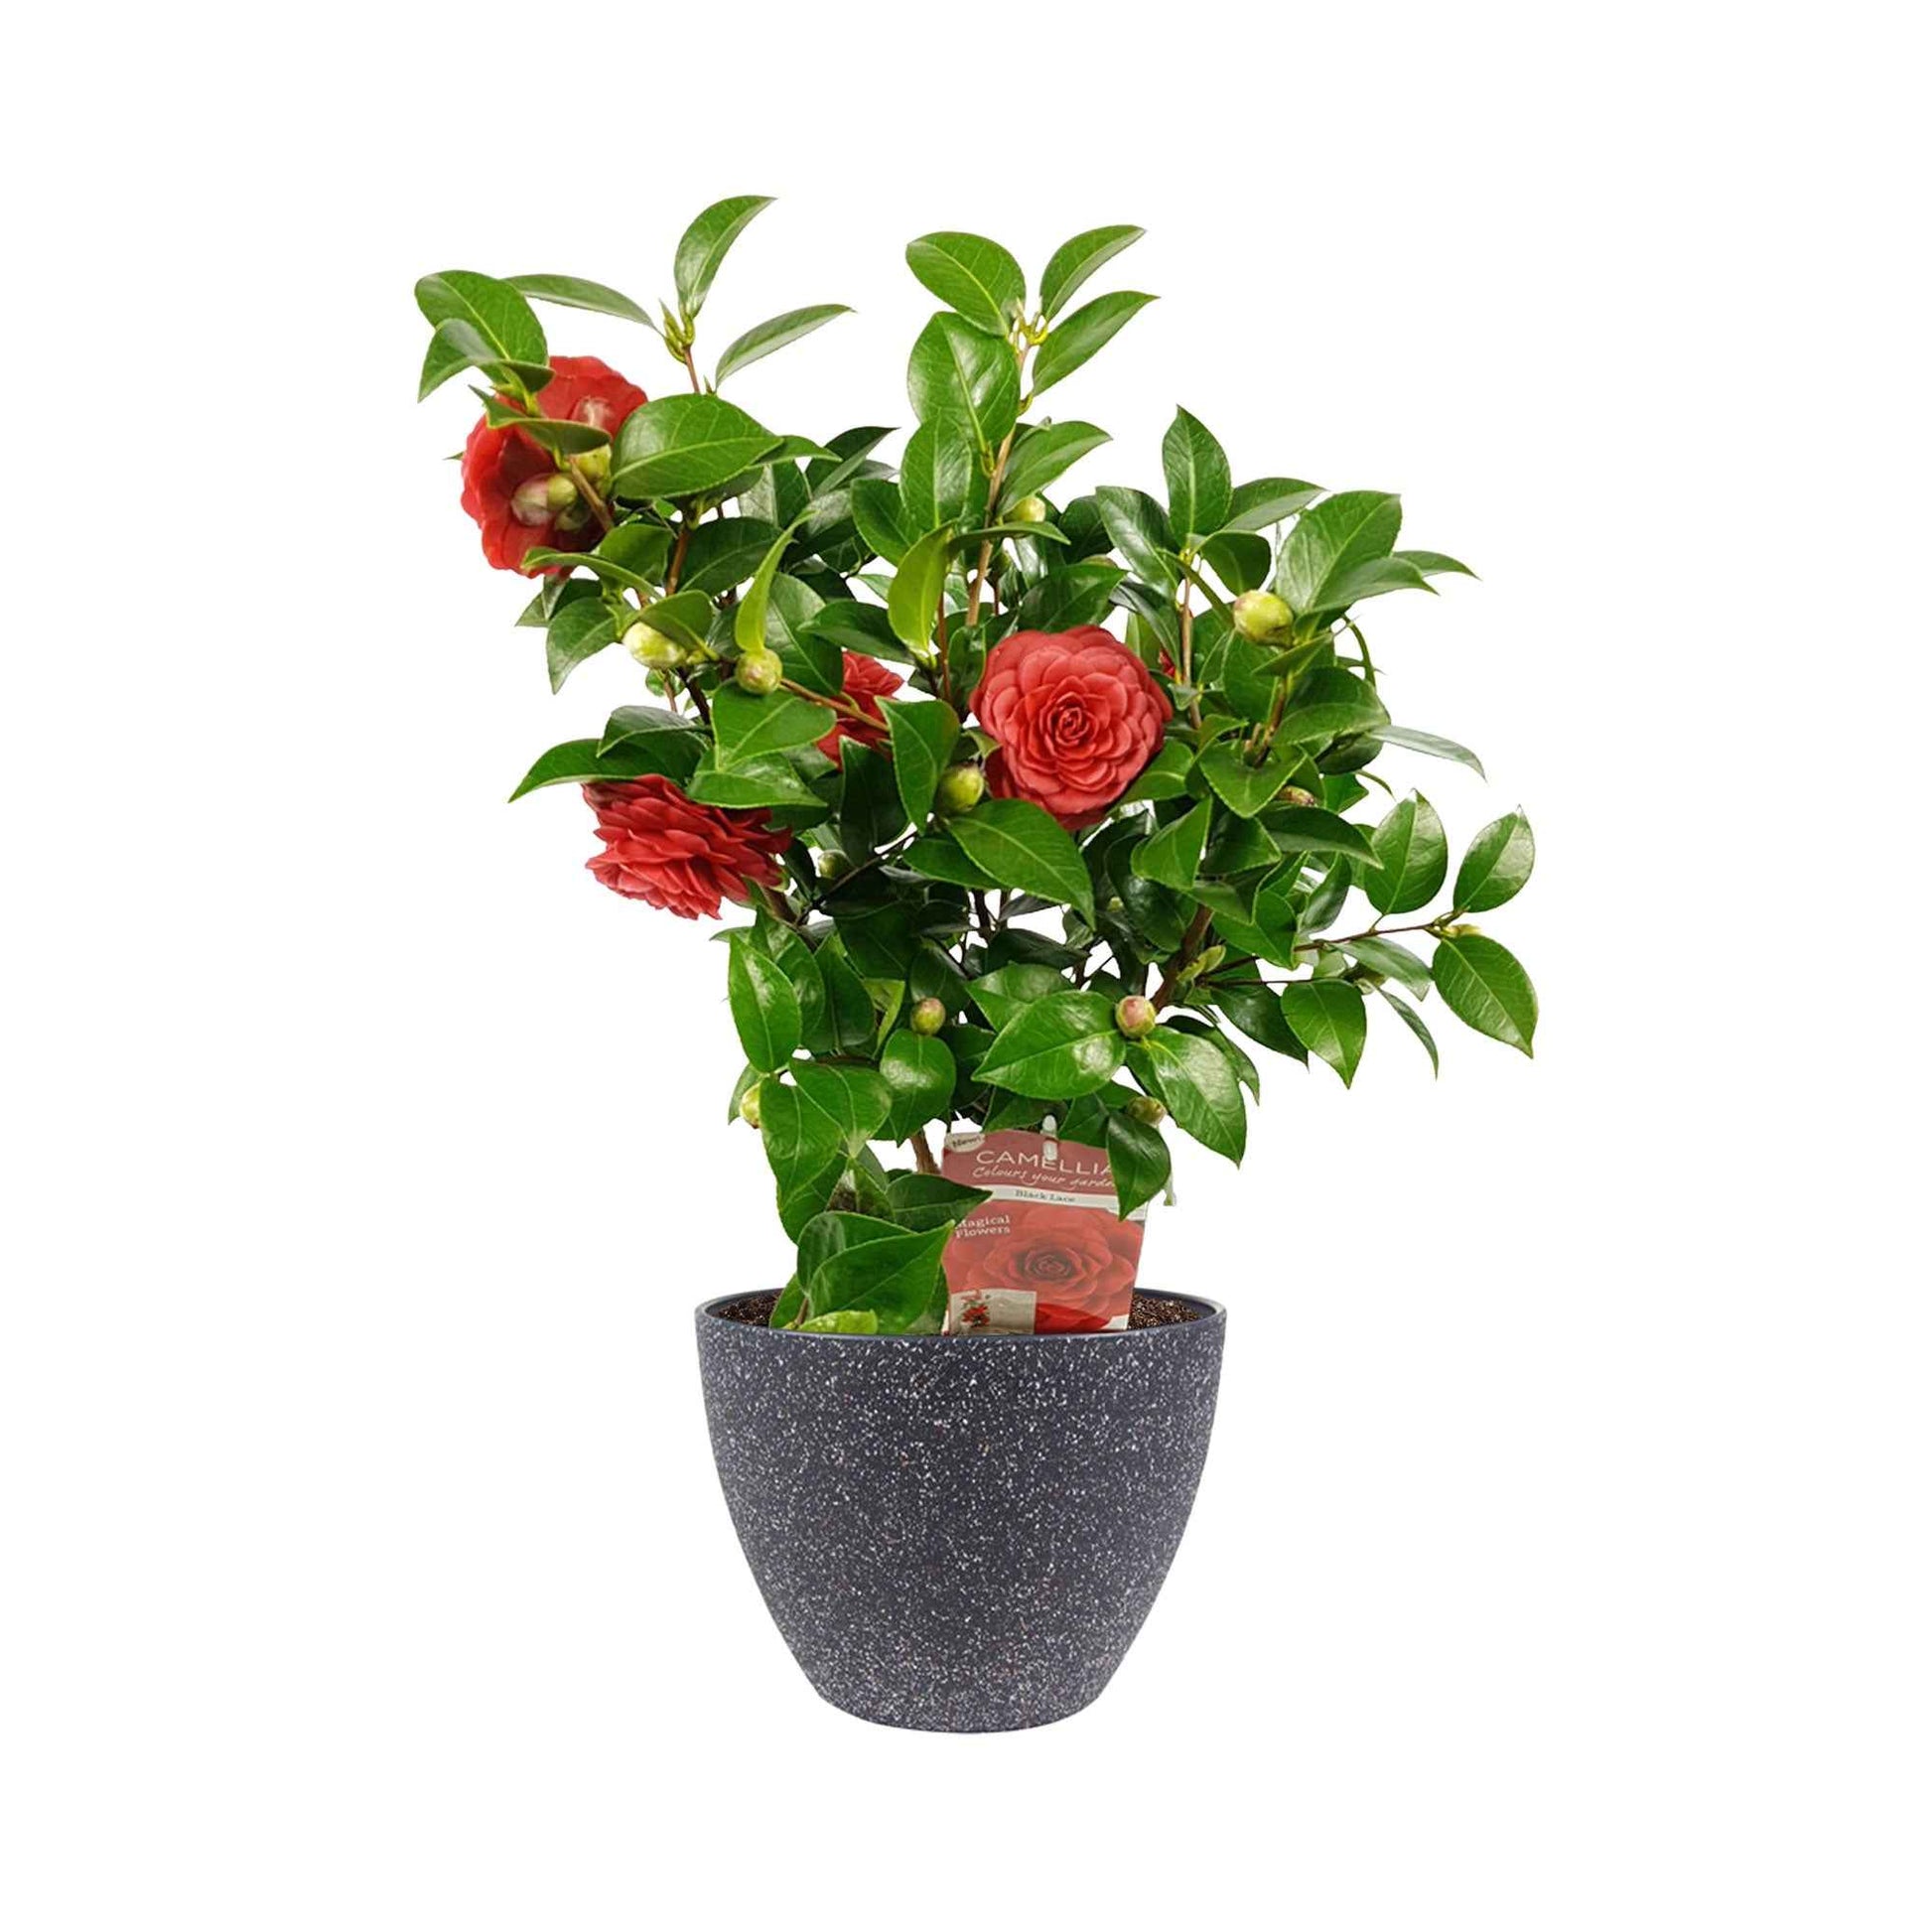 Camelia Camellia japonica 'Black Lace' rood incl. sierpot - Winterhard - Buitenplanten in sierpot